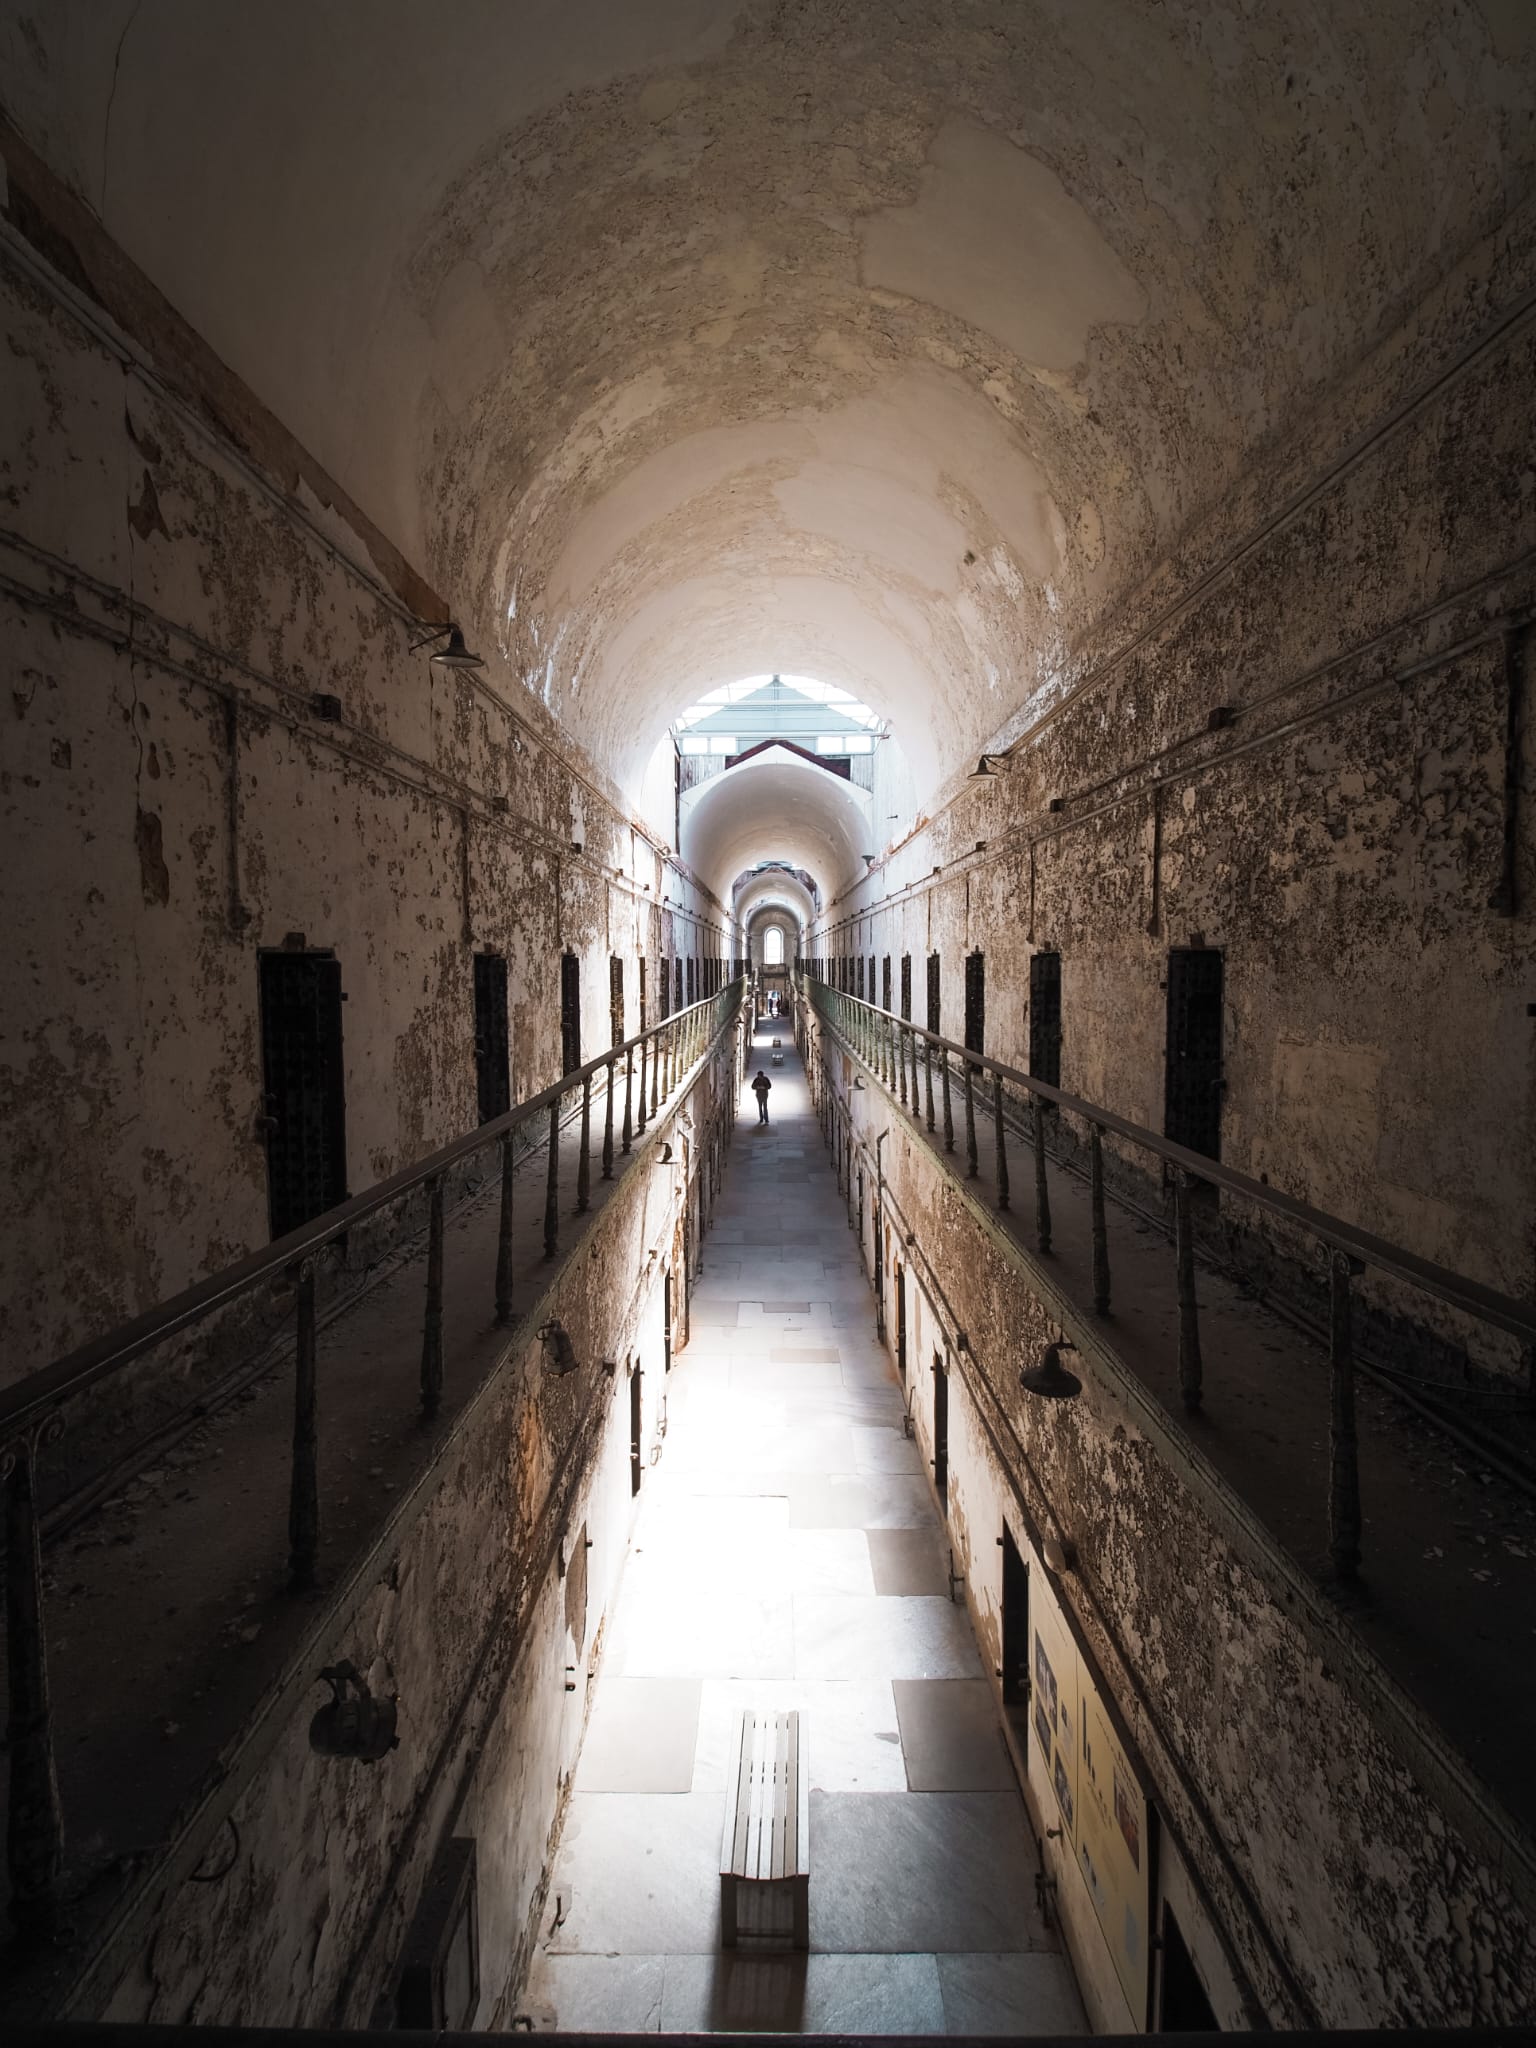 Het spookachtige interieur van Eastern State Penitentiary